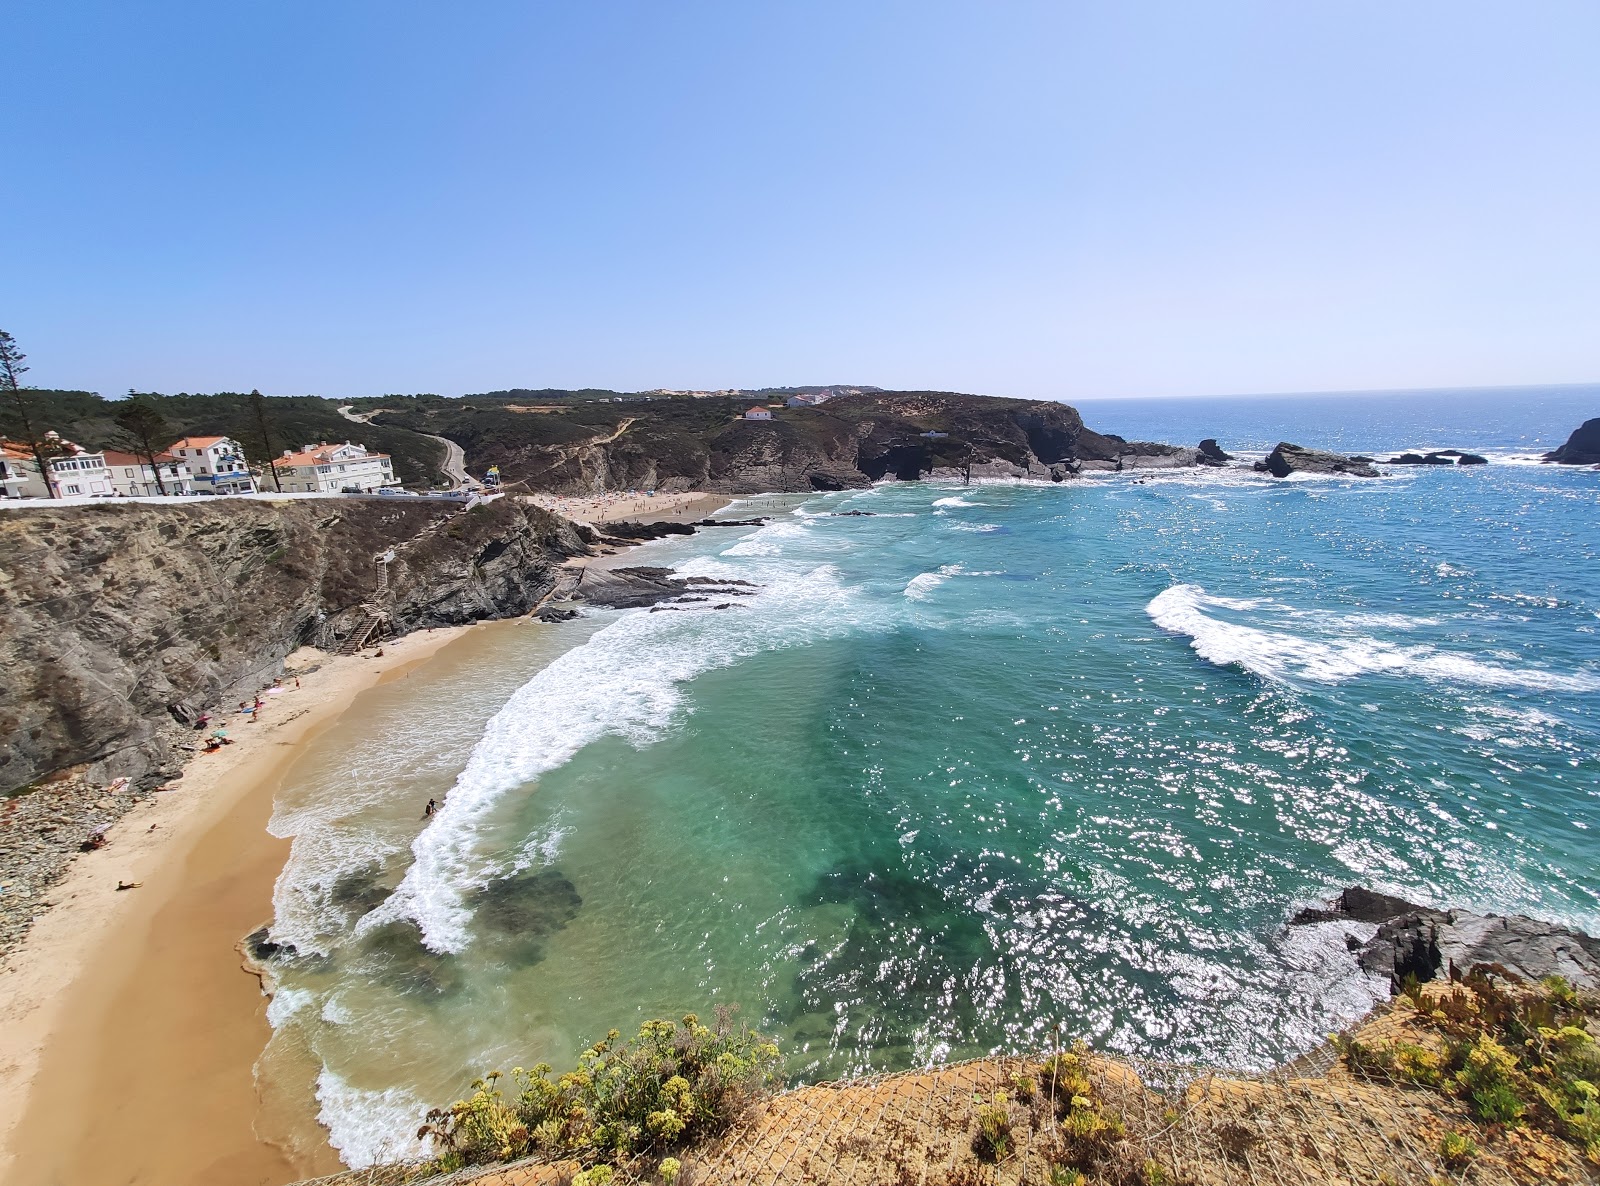 Zambujeira do Mar'in fotoğrafı parlak ince kum yüzey ile